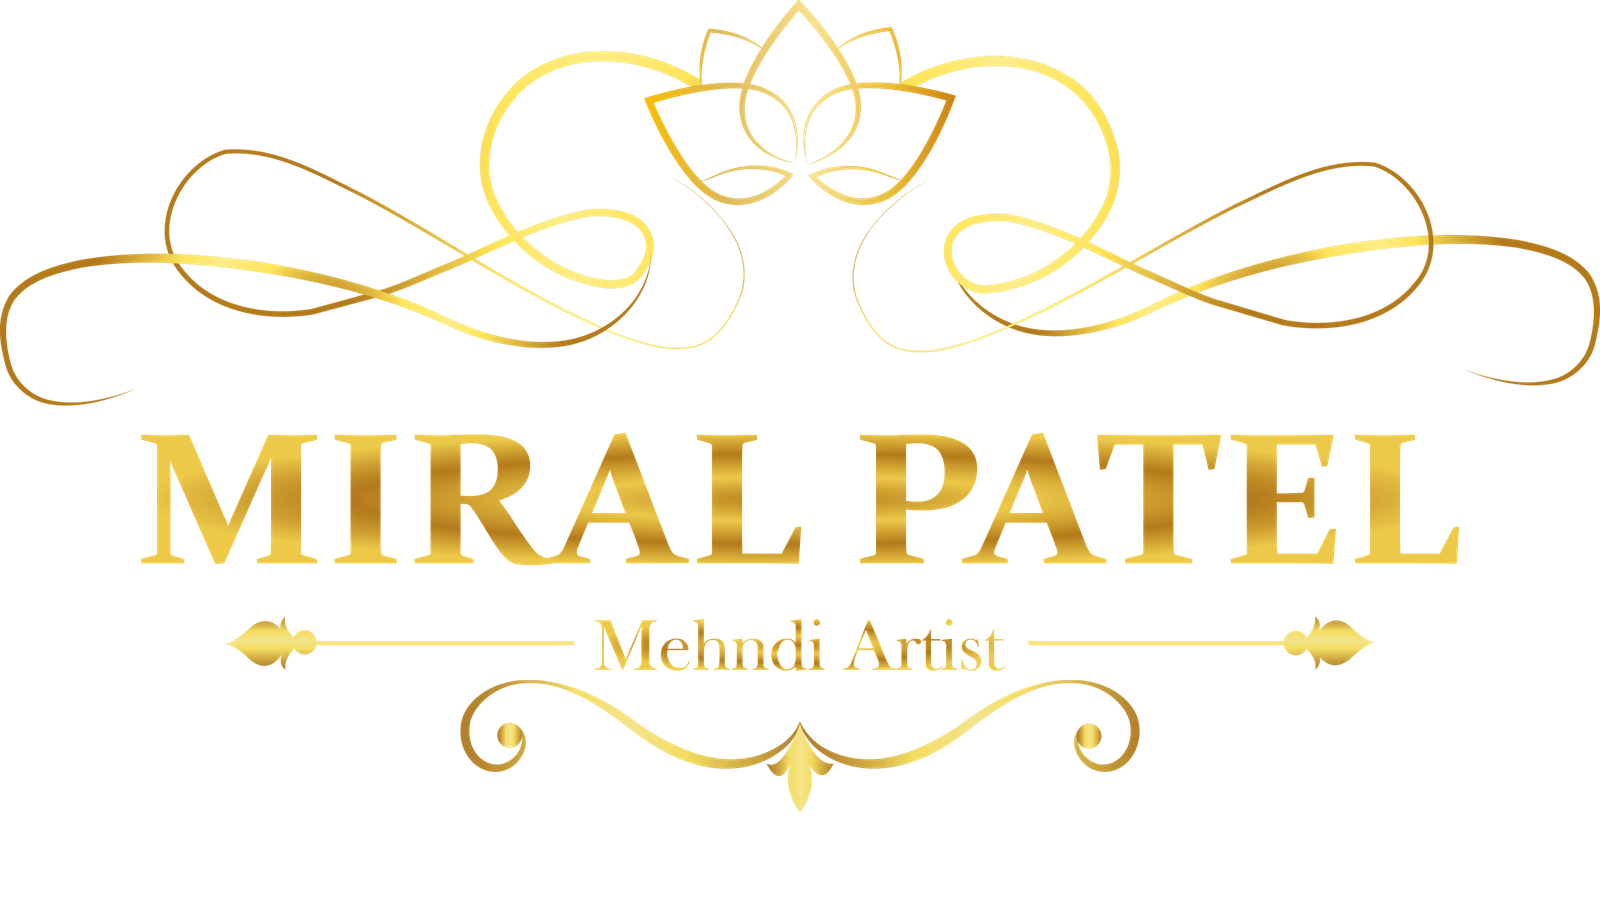 Miral Patel Mehndi